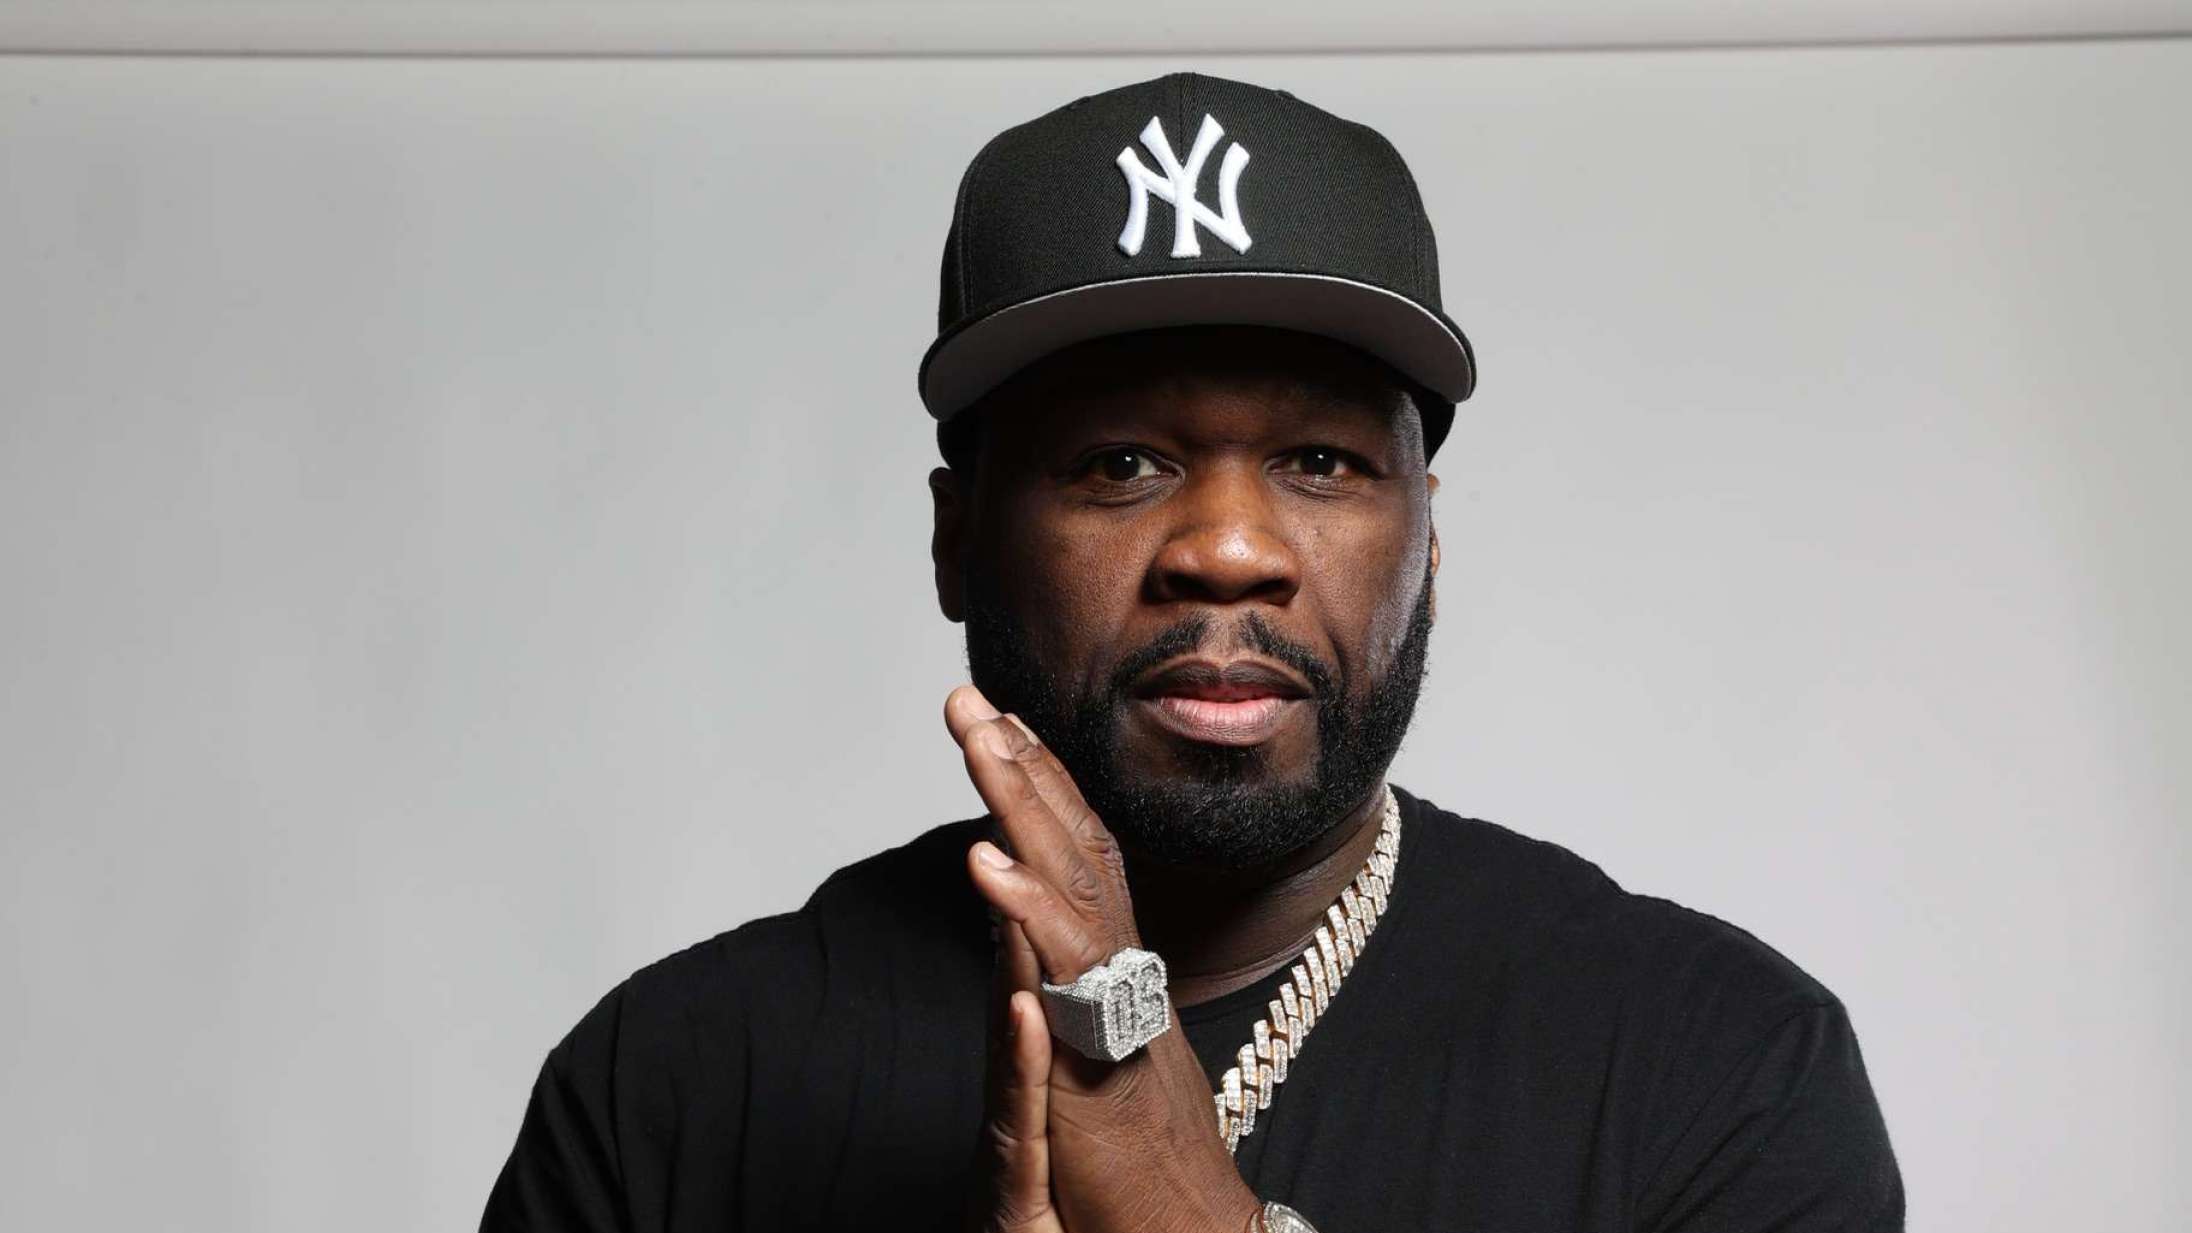 50 Cent i Royal Arena: Måske er det ikke det værste tidspunkt at finde sit G-Unit-pandebånd frem igen